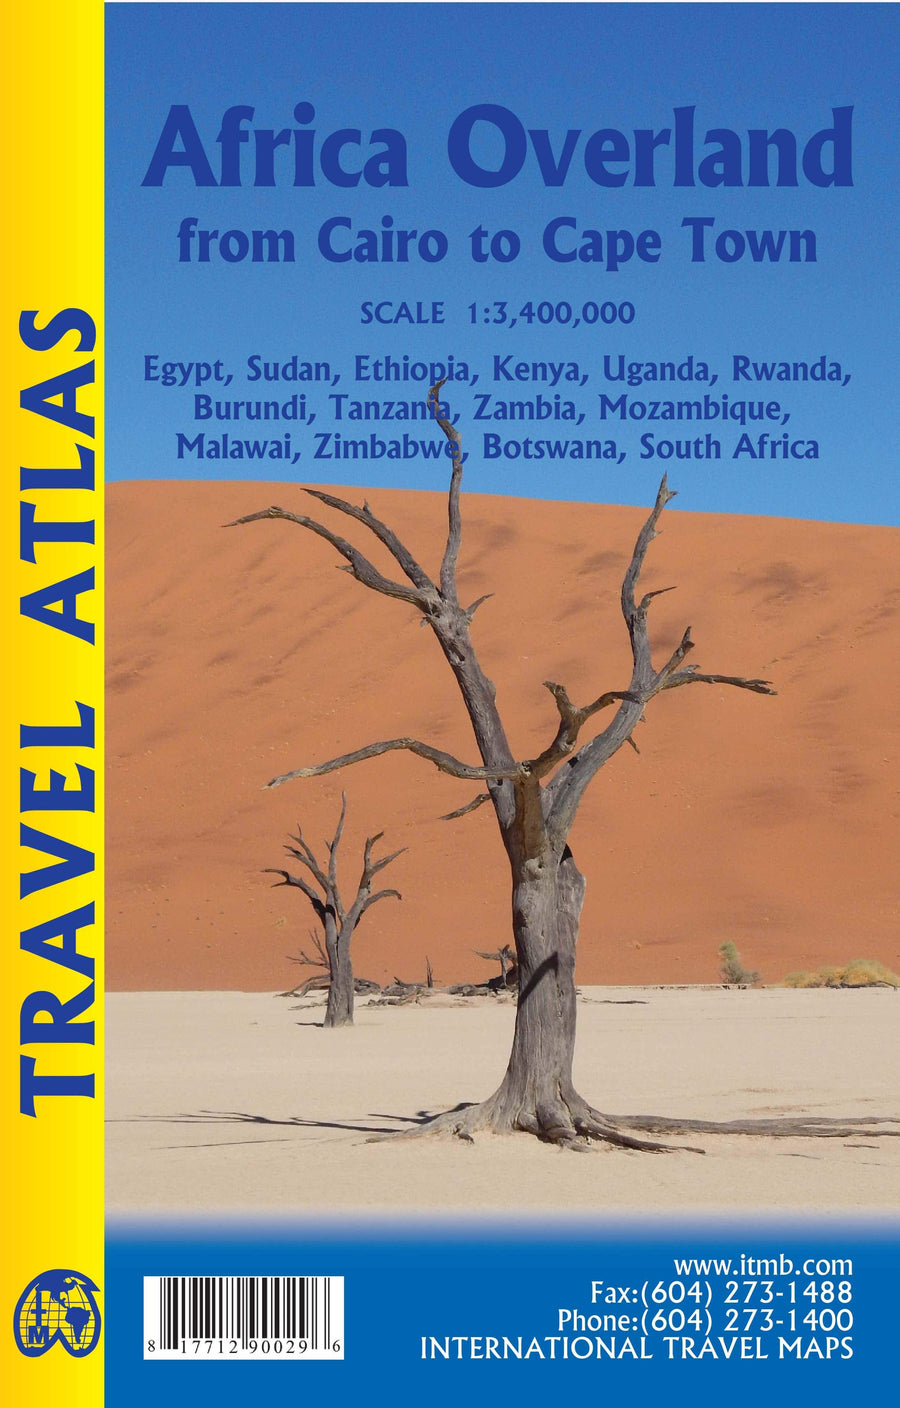 Atlas routier de poche - Afrique | ITM - La Compagnie des Cartes